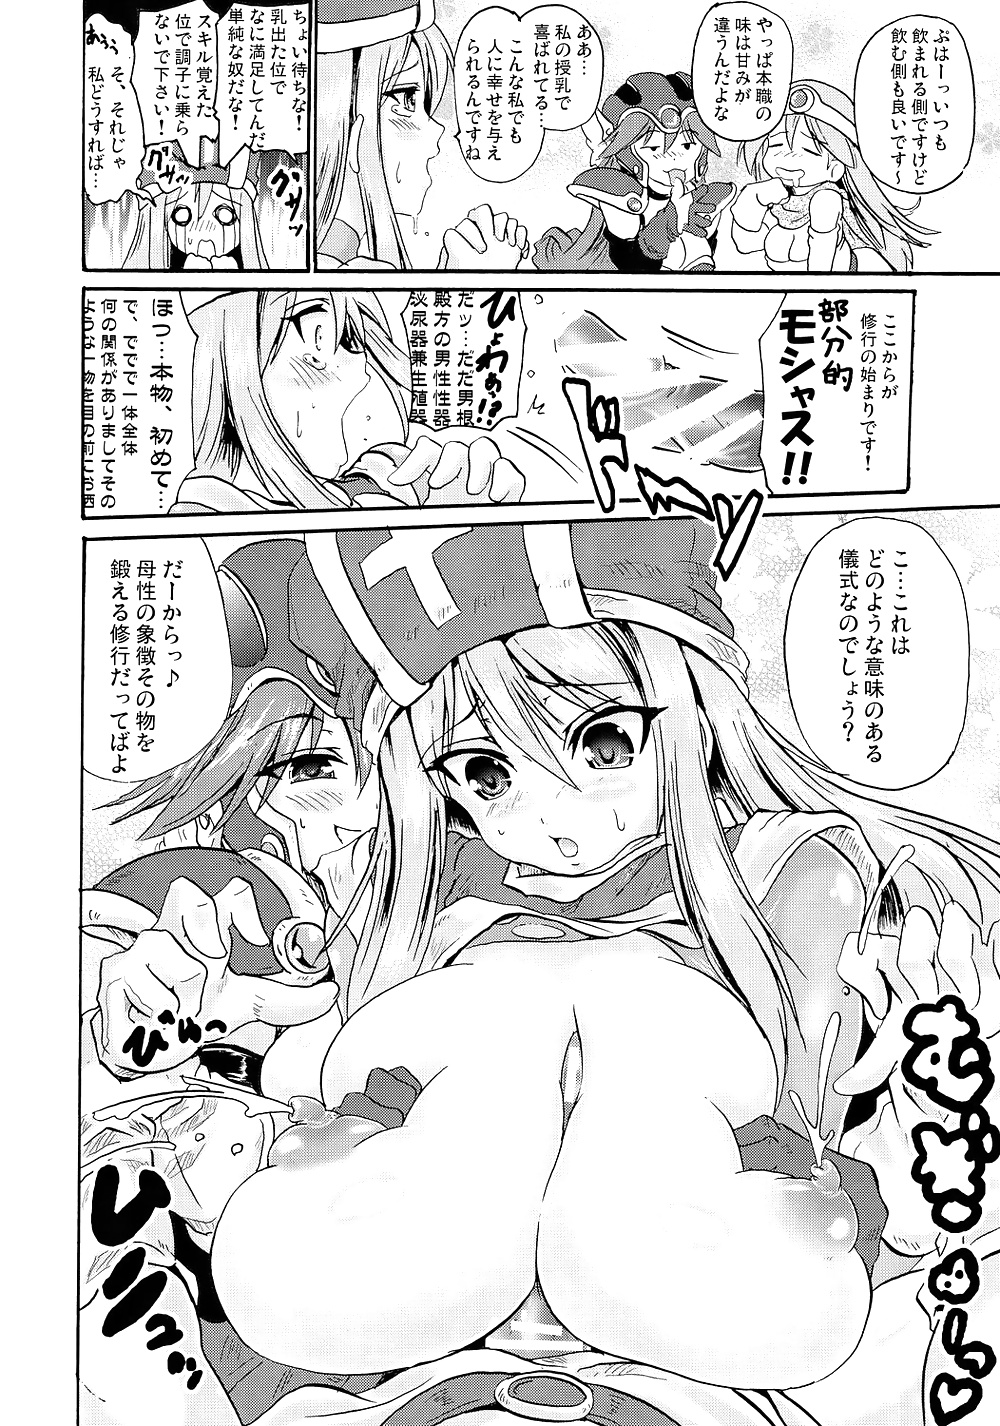 Best of Paizuri(Manga Edition) #30779794